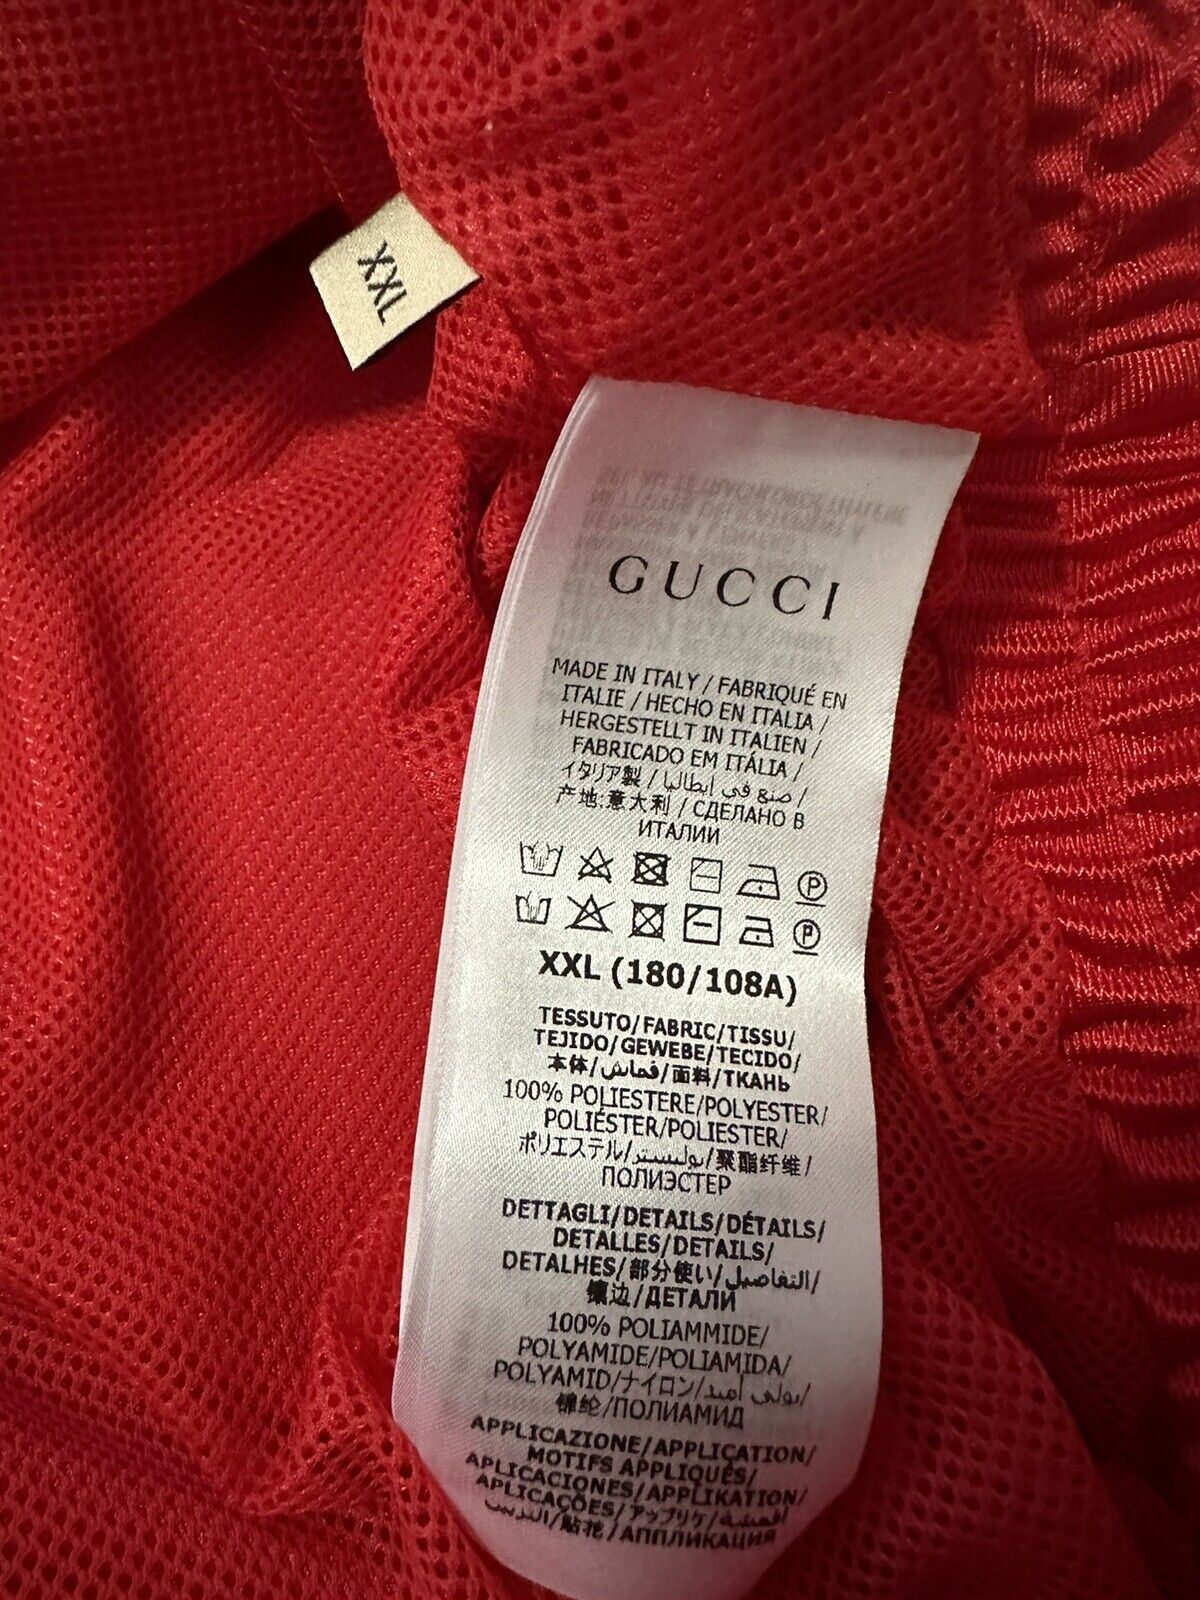 NWT $1550 Gucci Мужская спортивная куртка из технического полиэстера Пуловер красного цвета, размер XXL